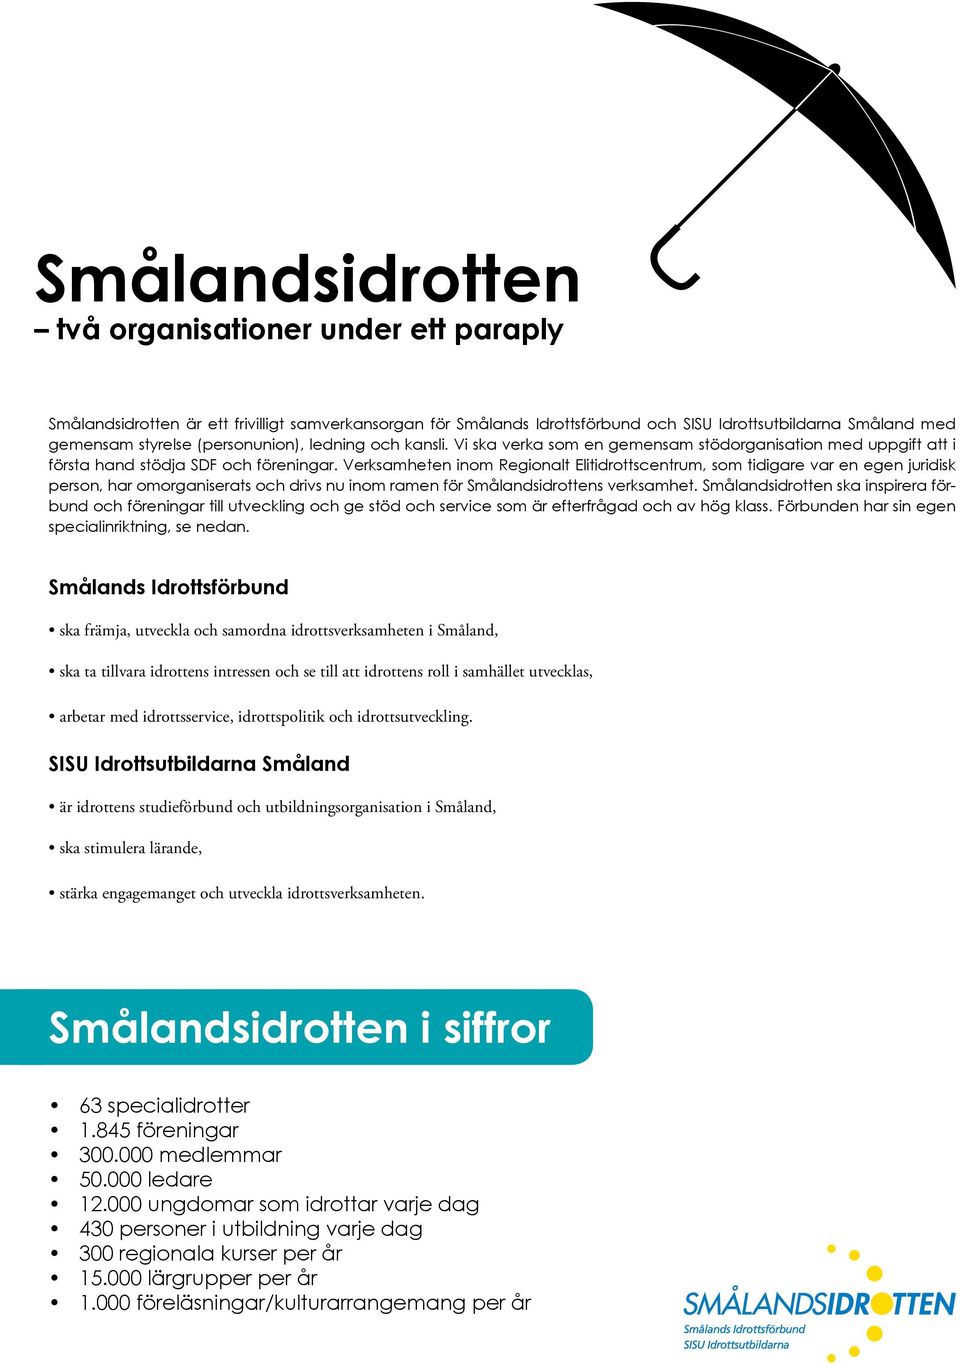 Verksamheten inom Regionalt Elitidrottscentrum, som tidigare var en egen juridisk person, har omorganiserats och drivs nu inom ramen för Smålandsidrottens verksamhet.